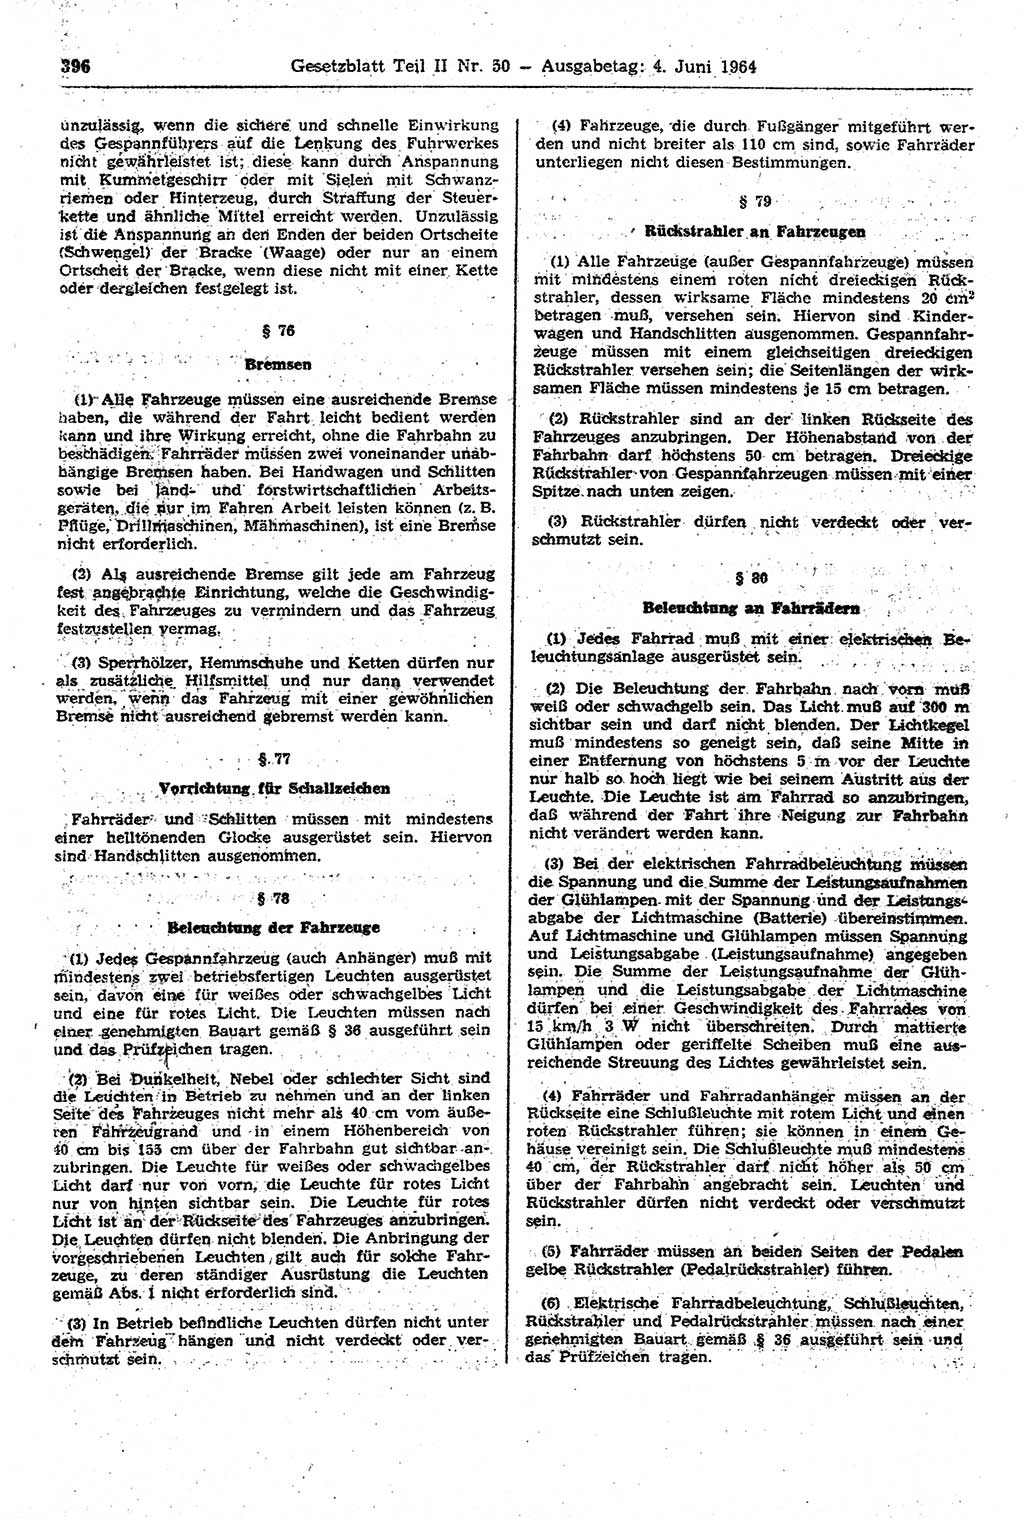 Gesetzblatt (GBl.) der Deutschen Demokratischen Republik (DDR) Teil ⅠⅠ 1964, Seite 396 (GBl. DDR ⅠⅠ 1964, S. 396)